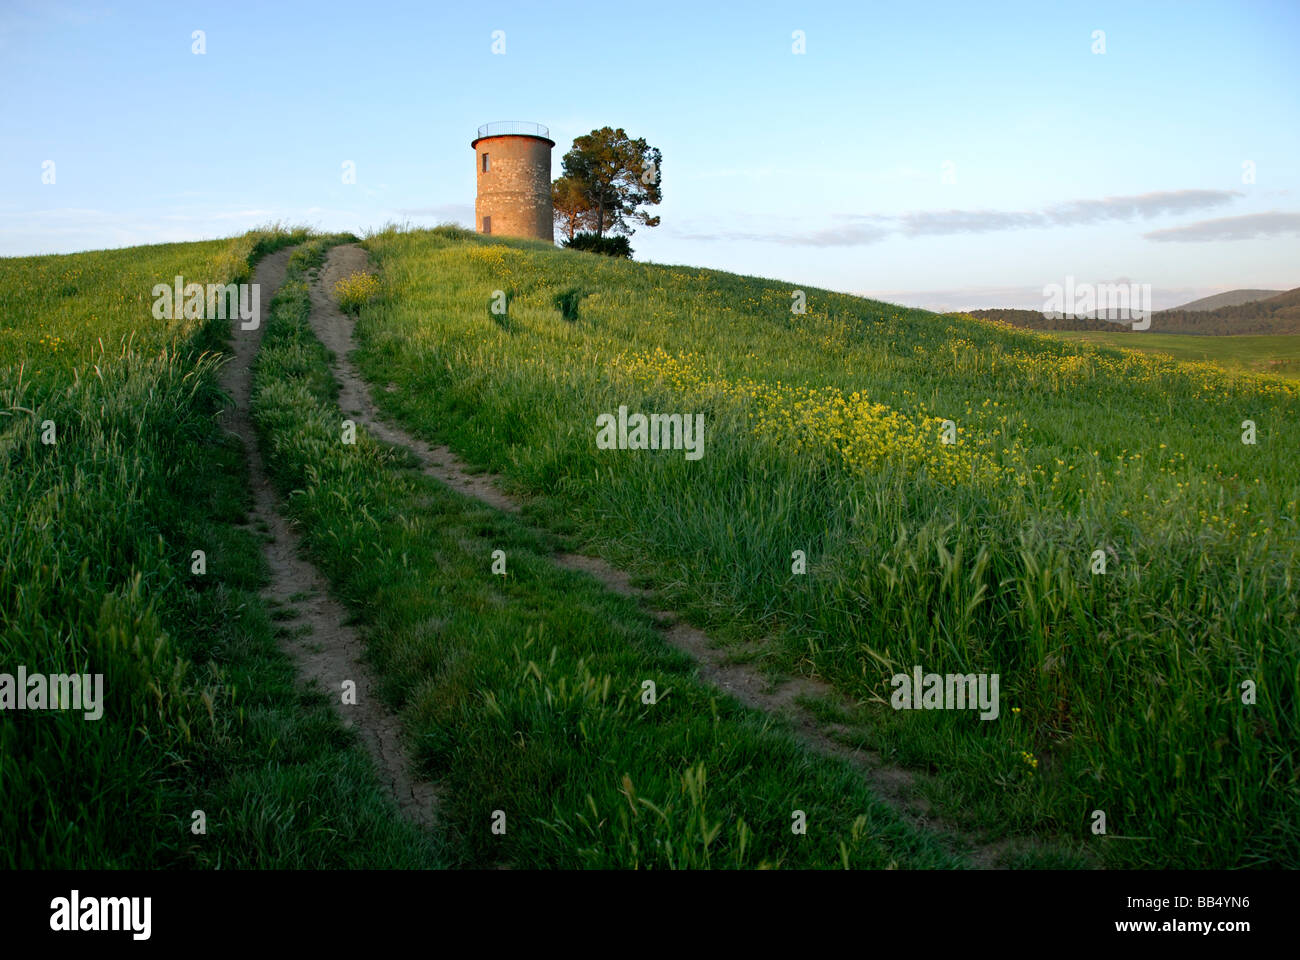 Les voies menant au milieu d'un paysage verdoyant de tour d'observation contre le ciel près de medieval (une fois) village étrusque Bibbona, Toscane, Italie Banque D'Images